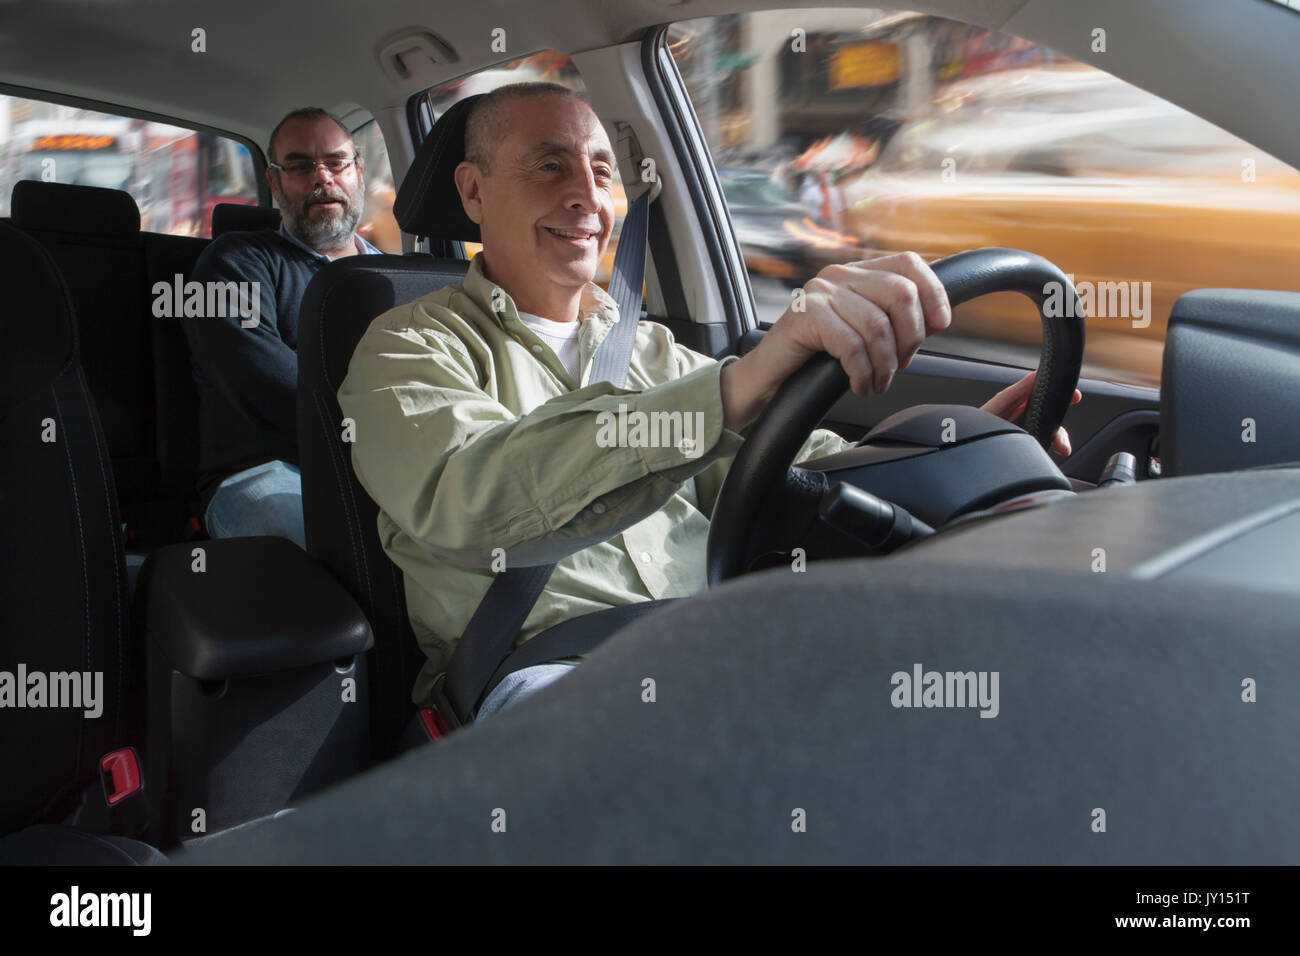 Smiling Hispanic man driving car avec passager Banque D'Images